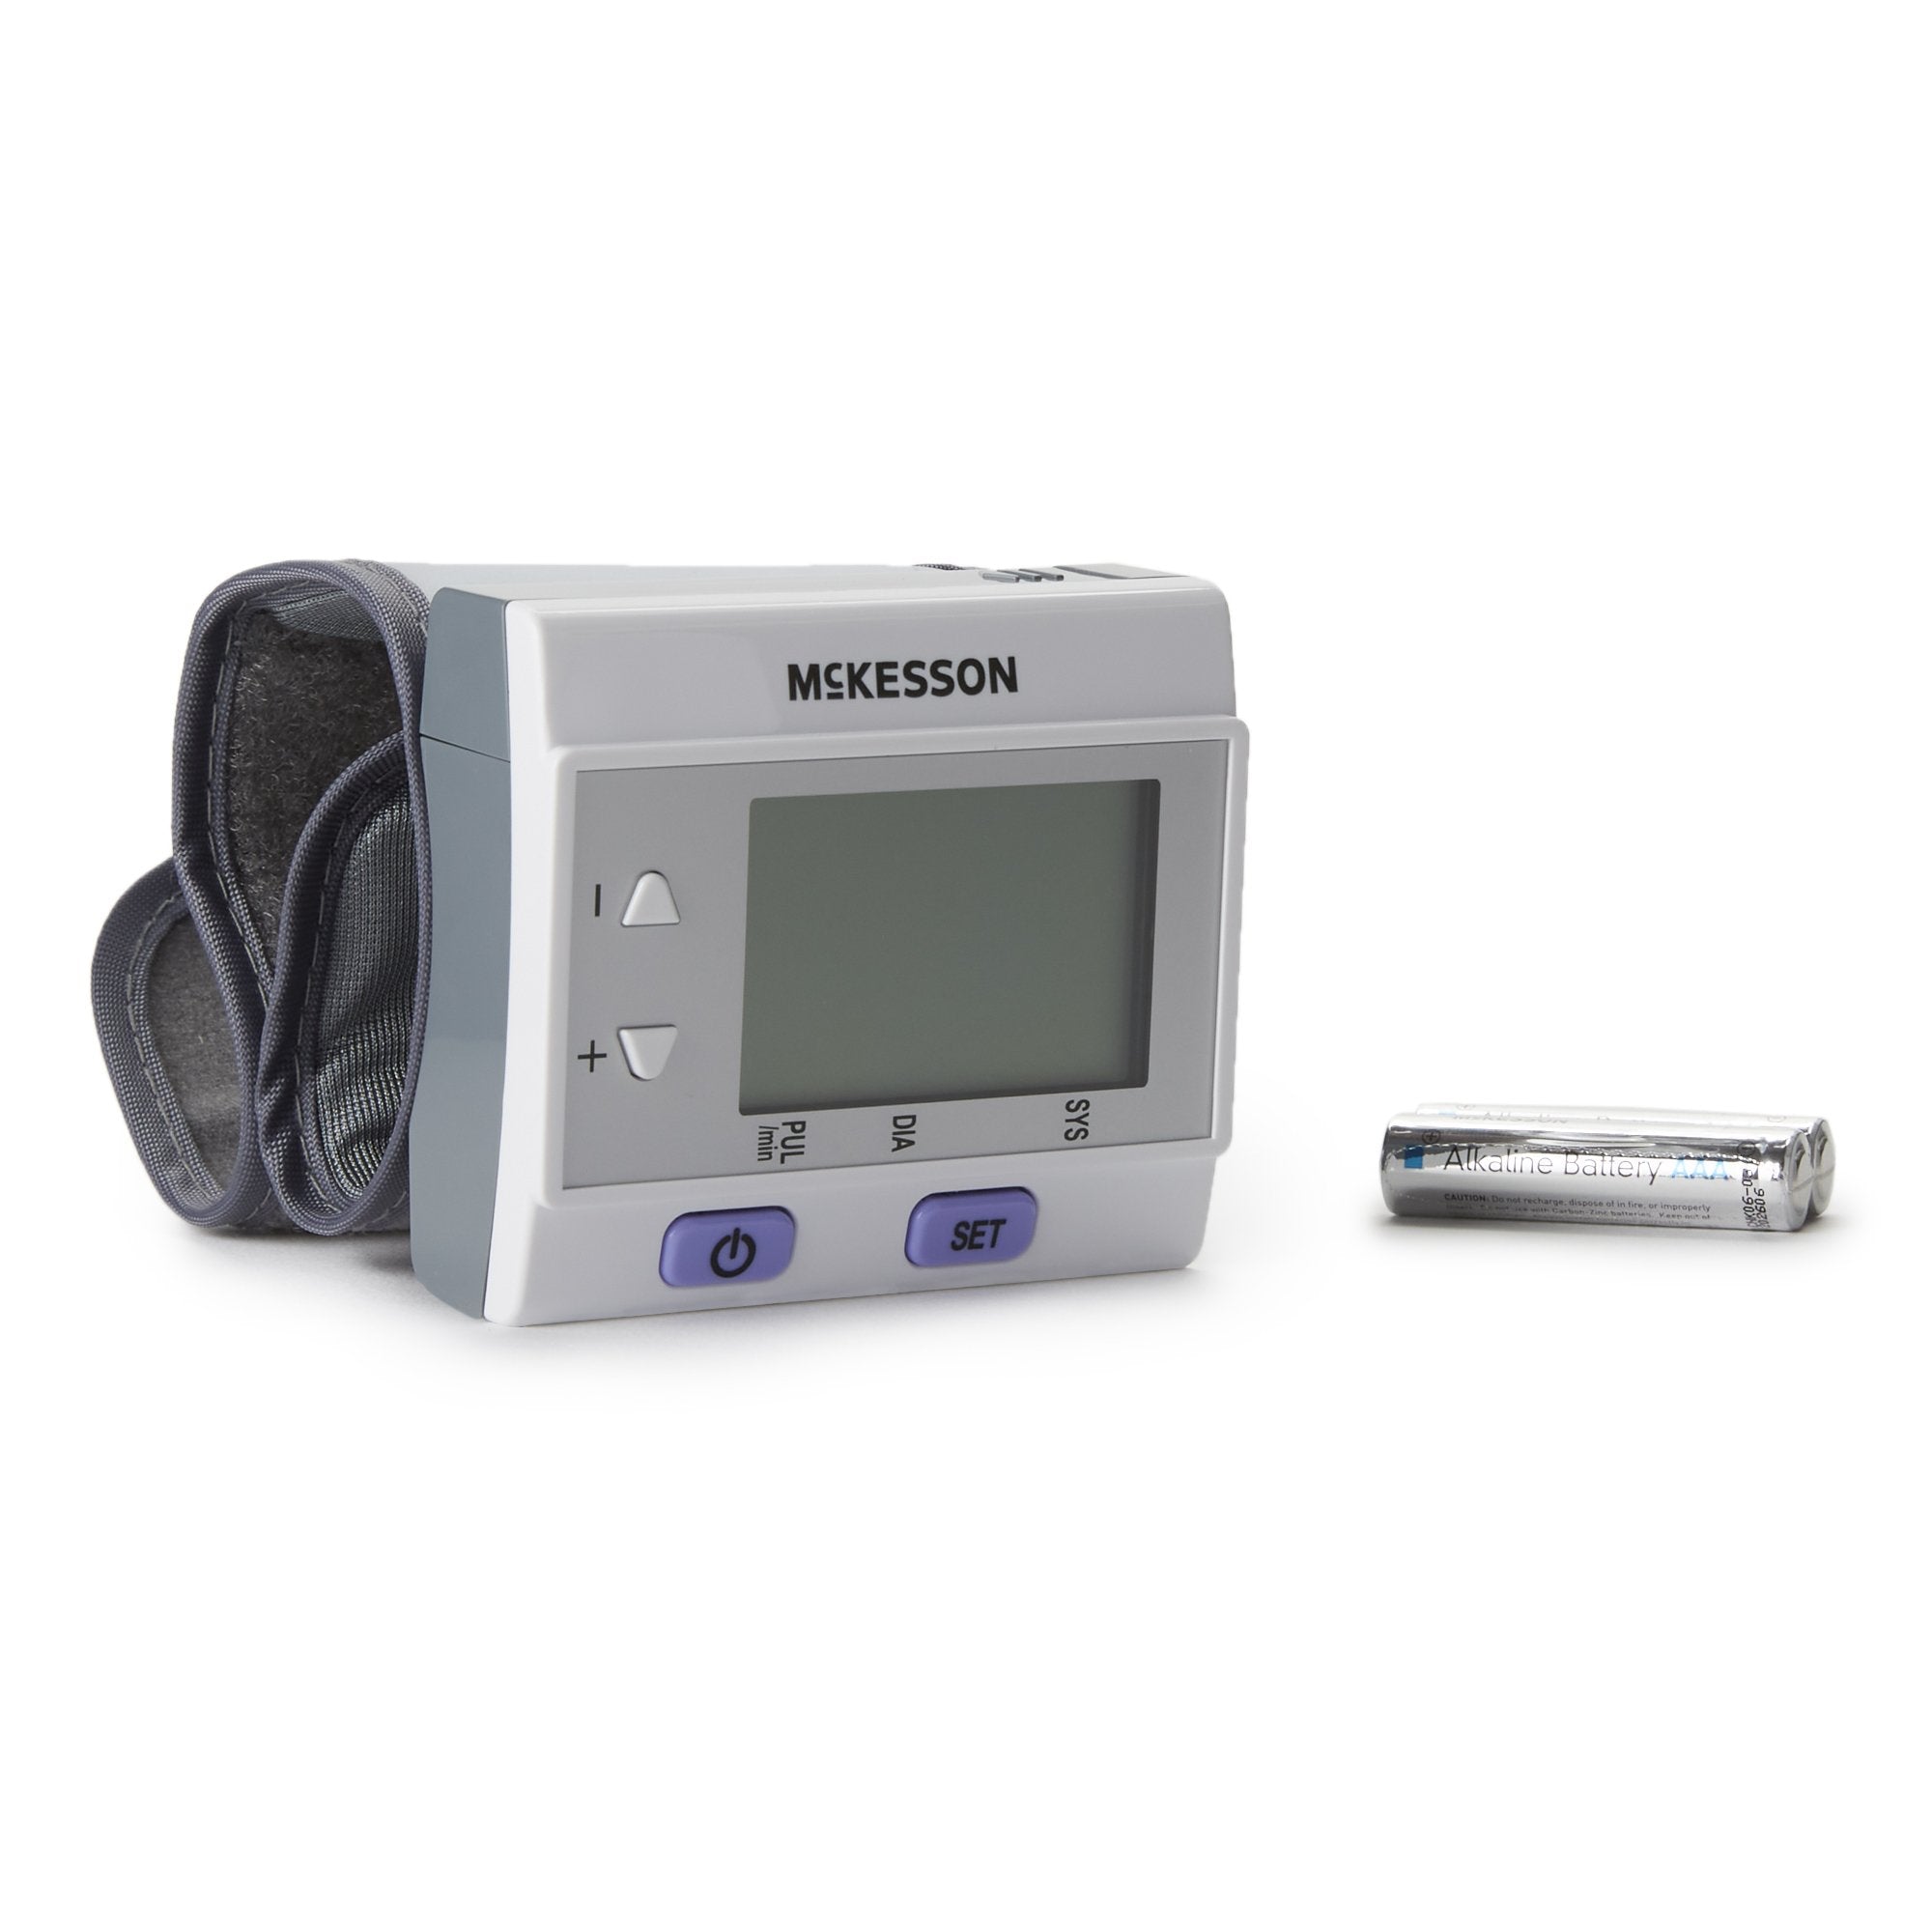 Home Automatic Digital Blood Pressure Monitor McKesson Brand One Size Fits Most Cuff Nylon Cuff Desk Model